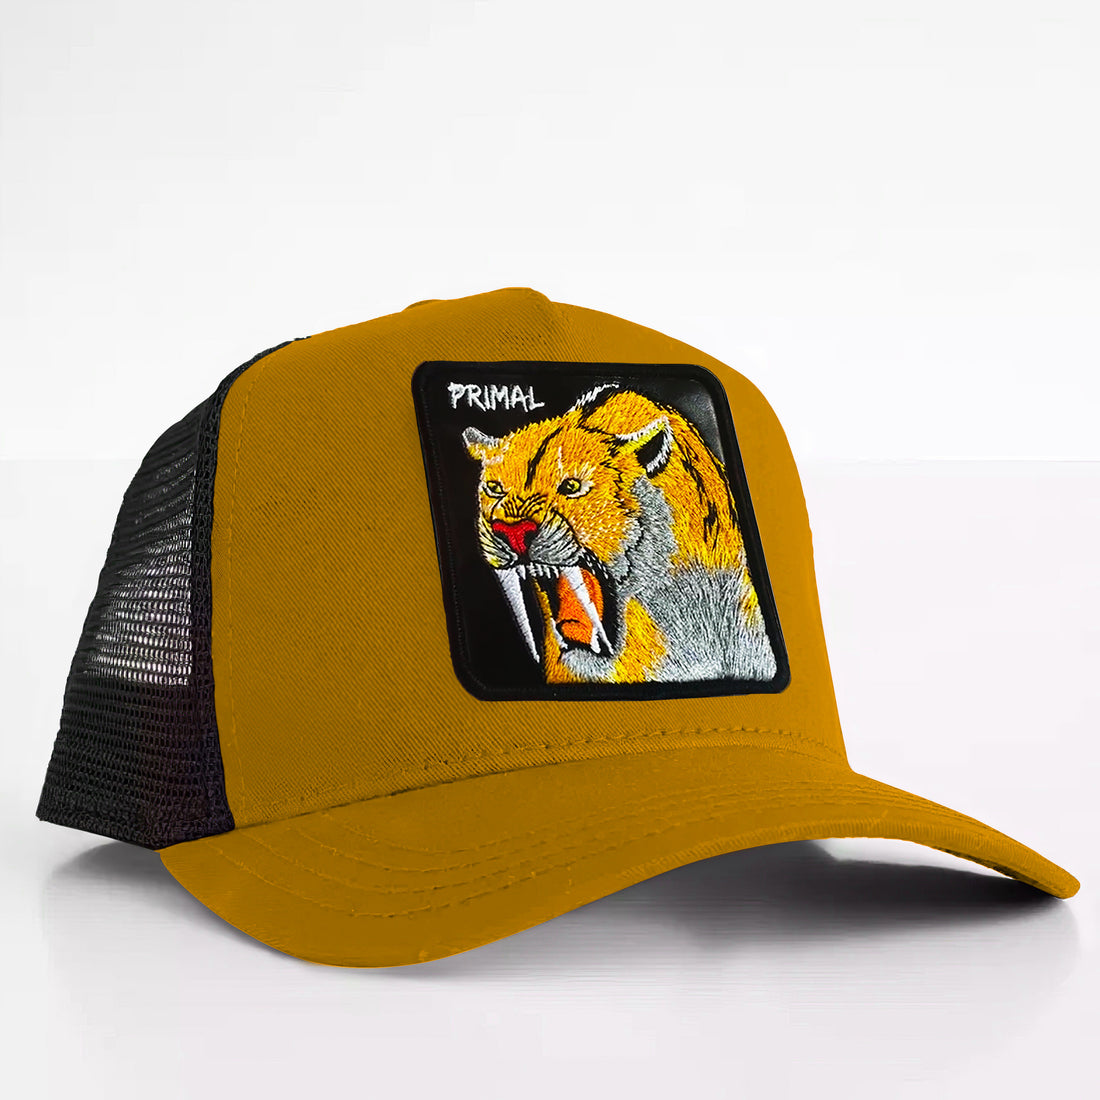 Saber-tooth Tiger - "primal" Trucker Hat